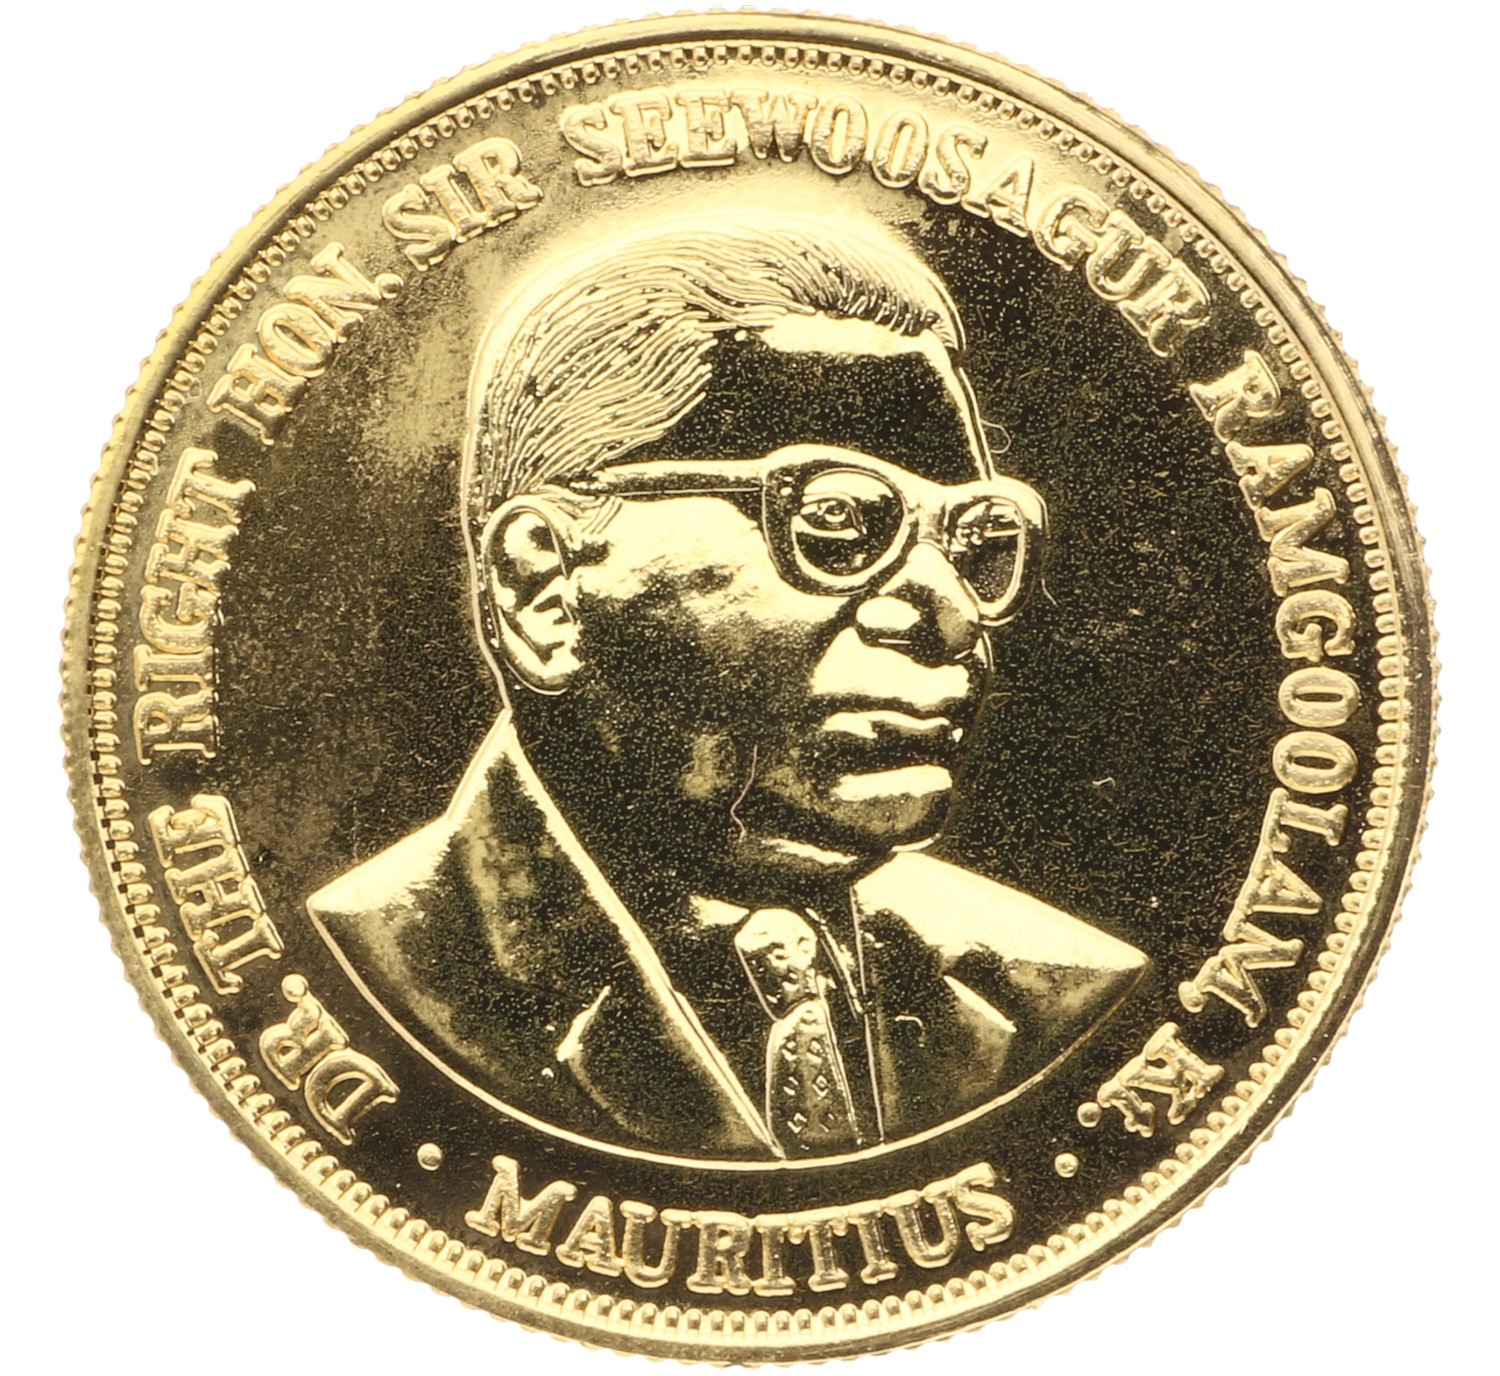 1000 Rupees - Mauritius - 1978